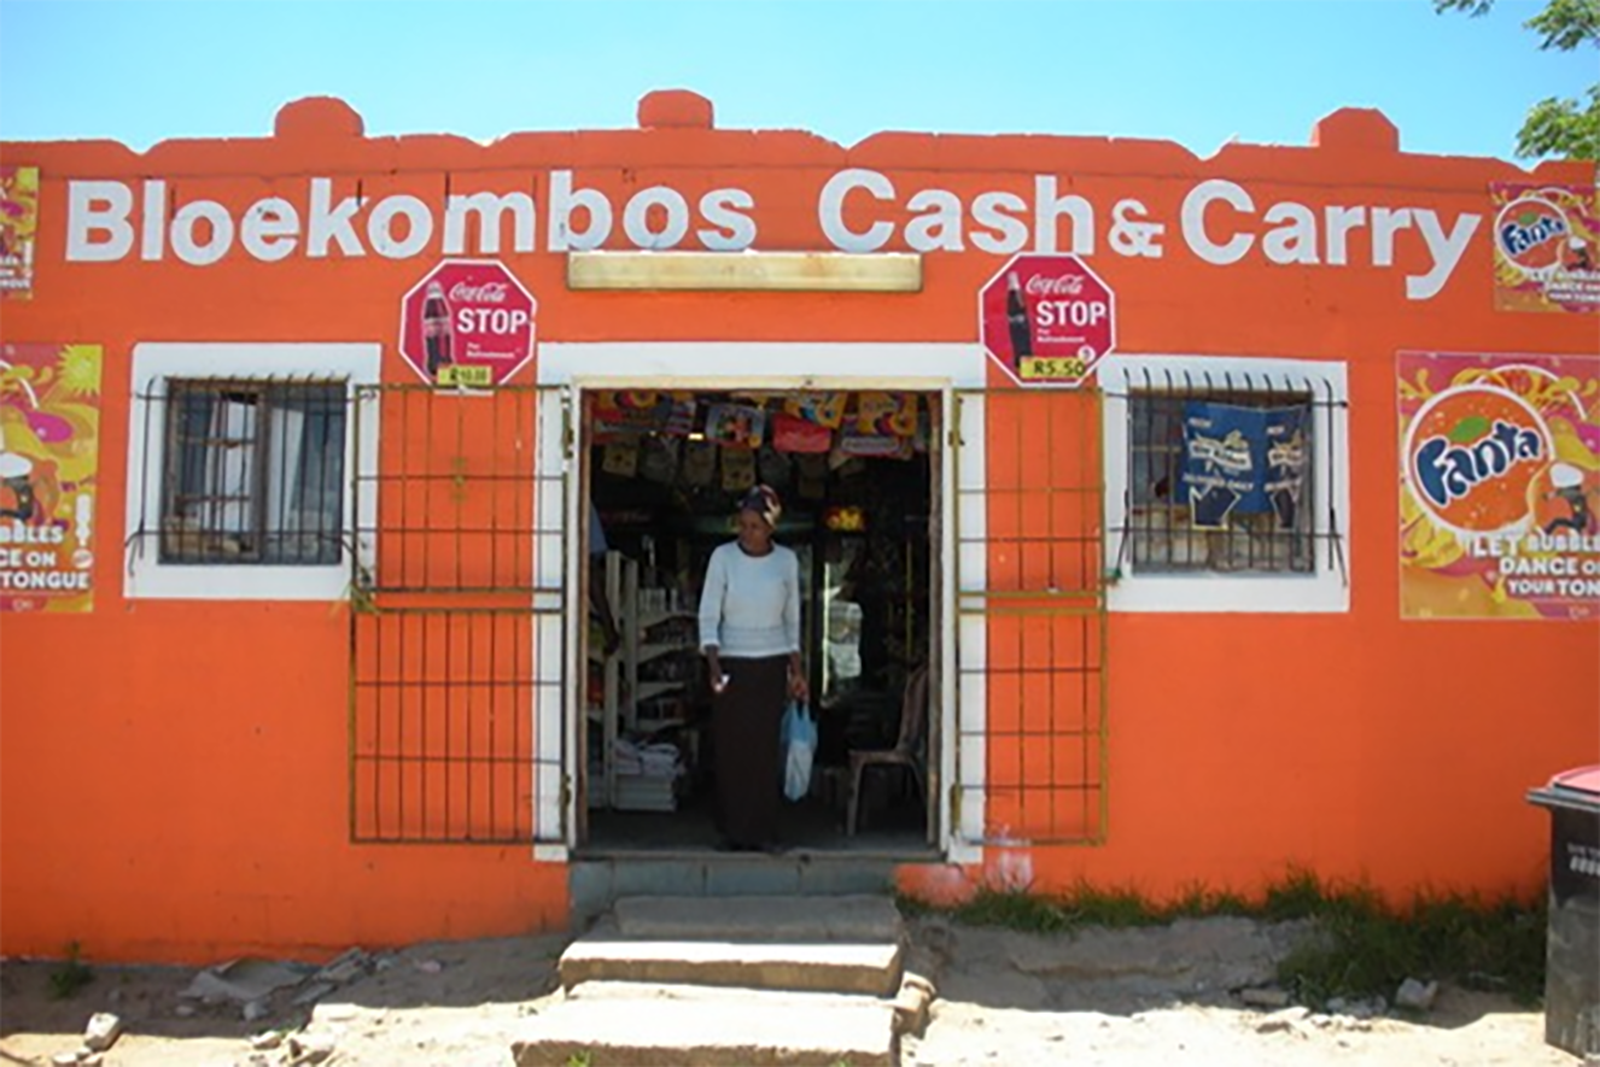 Bloekombos Cash and Carry store. Woman standing in the doorway.